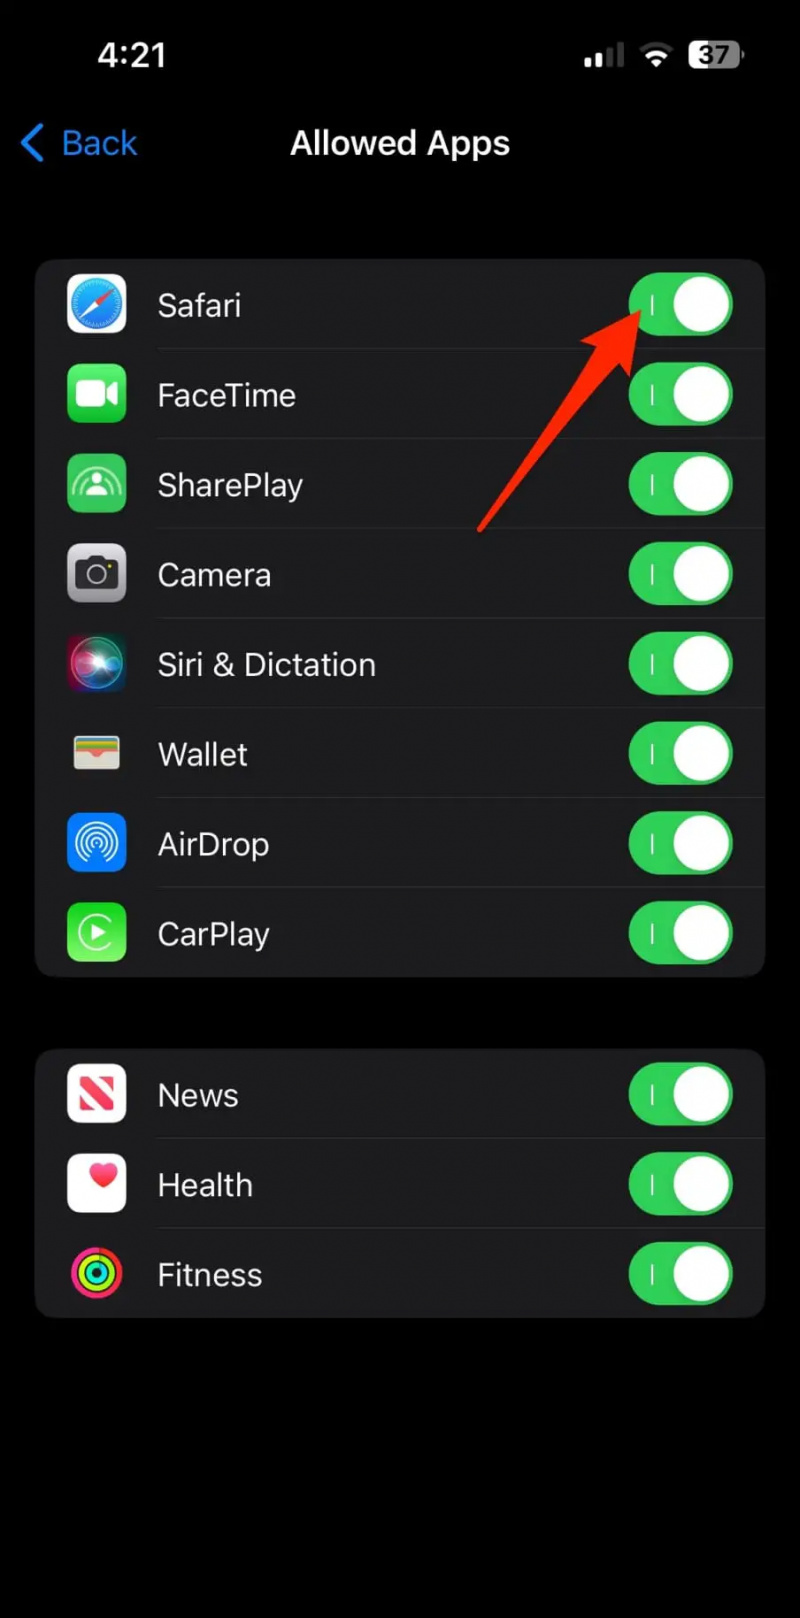   Blocca le app su iPhone utilizzando la restrizione dei contenuti